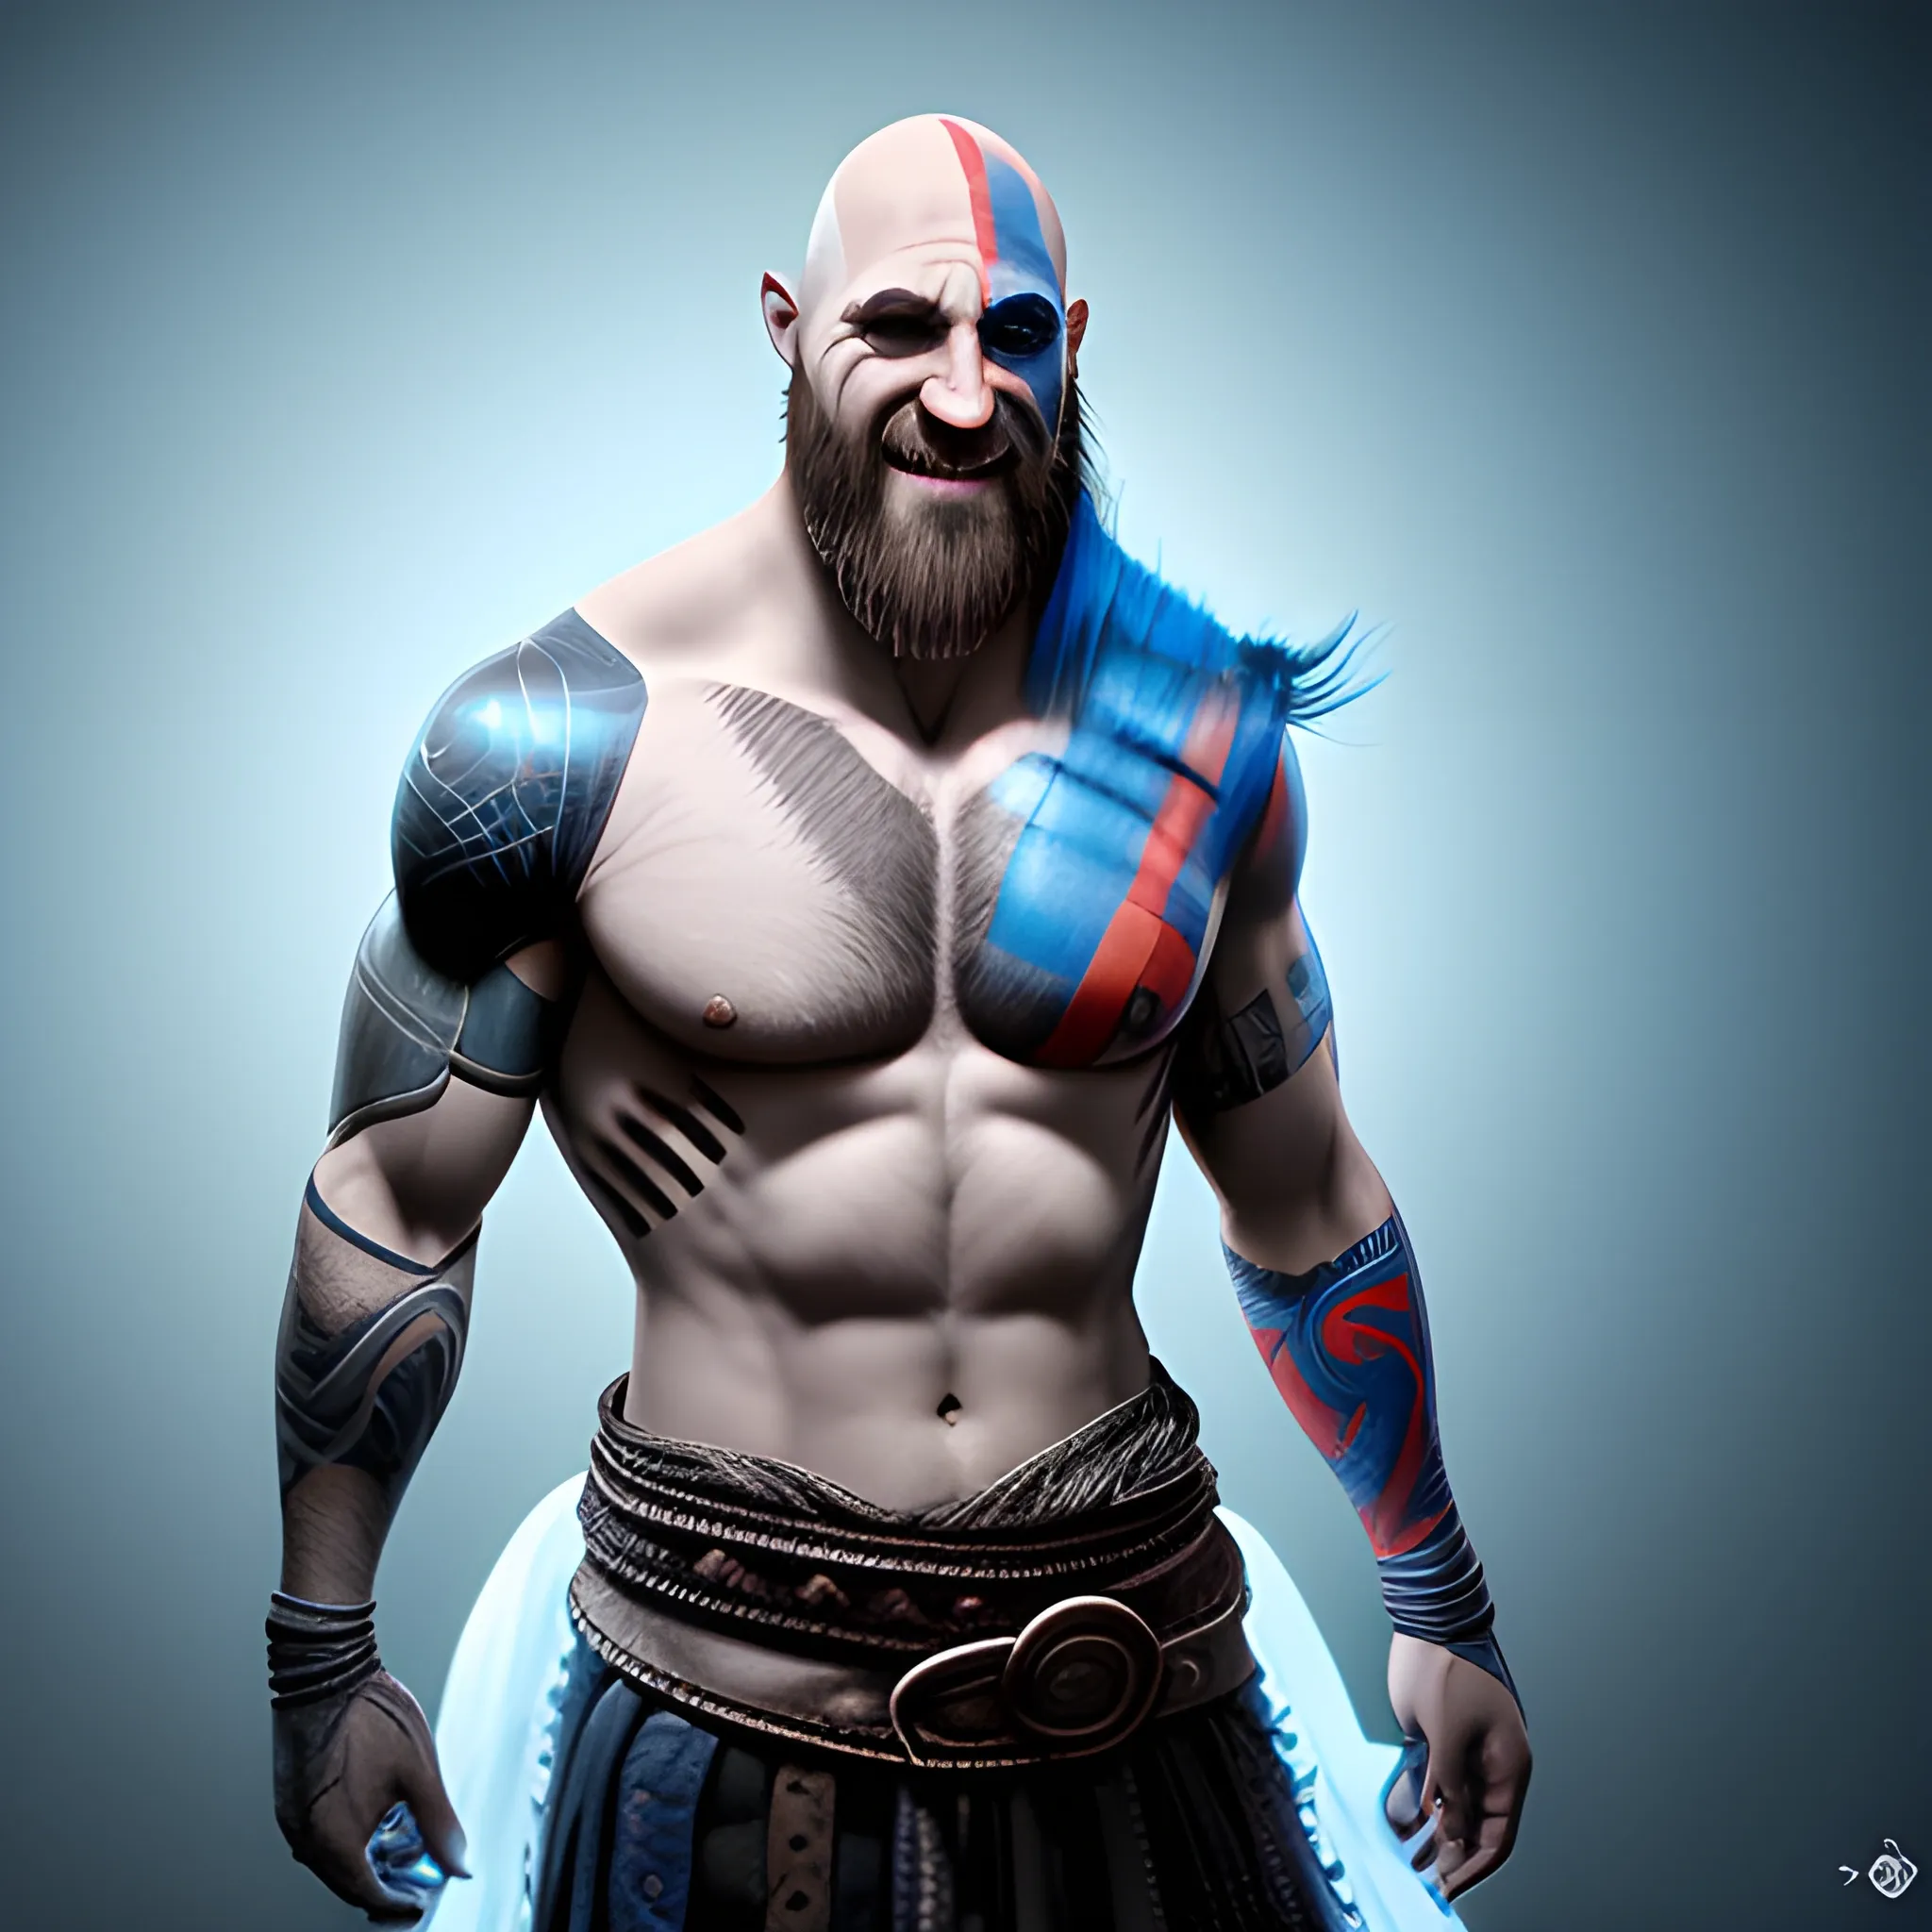 imagen fotorrealista de kratos, cuerpo completo, sonrisa ominosa 